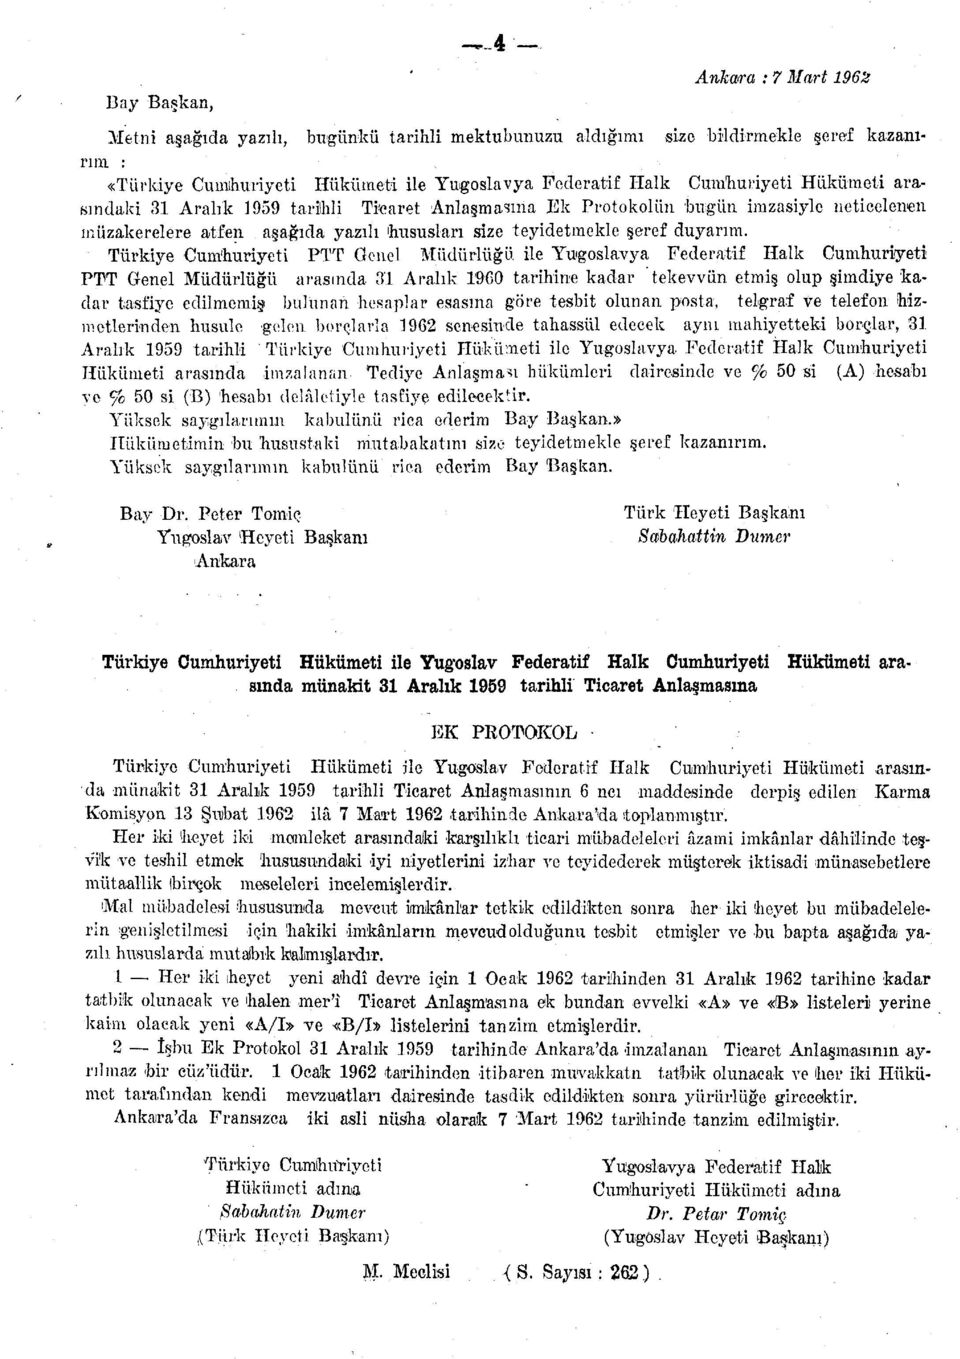 Türkiye Cumhuriyeti PTT Genel Müdürlüğü ile Yugoslavya Federatif Halk Cumhuriyeti PTT Genel Müdürlüğü arasında 31 Aralık 1960 tarihine kadar "tekevvün etmiş olup şimdiye kadar tasfiye edilmemiş